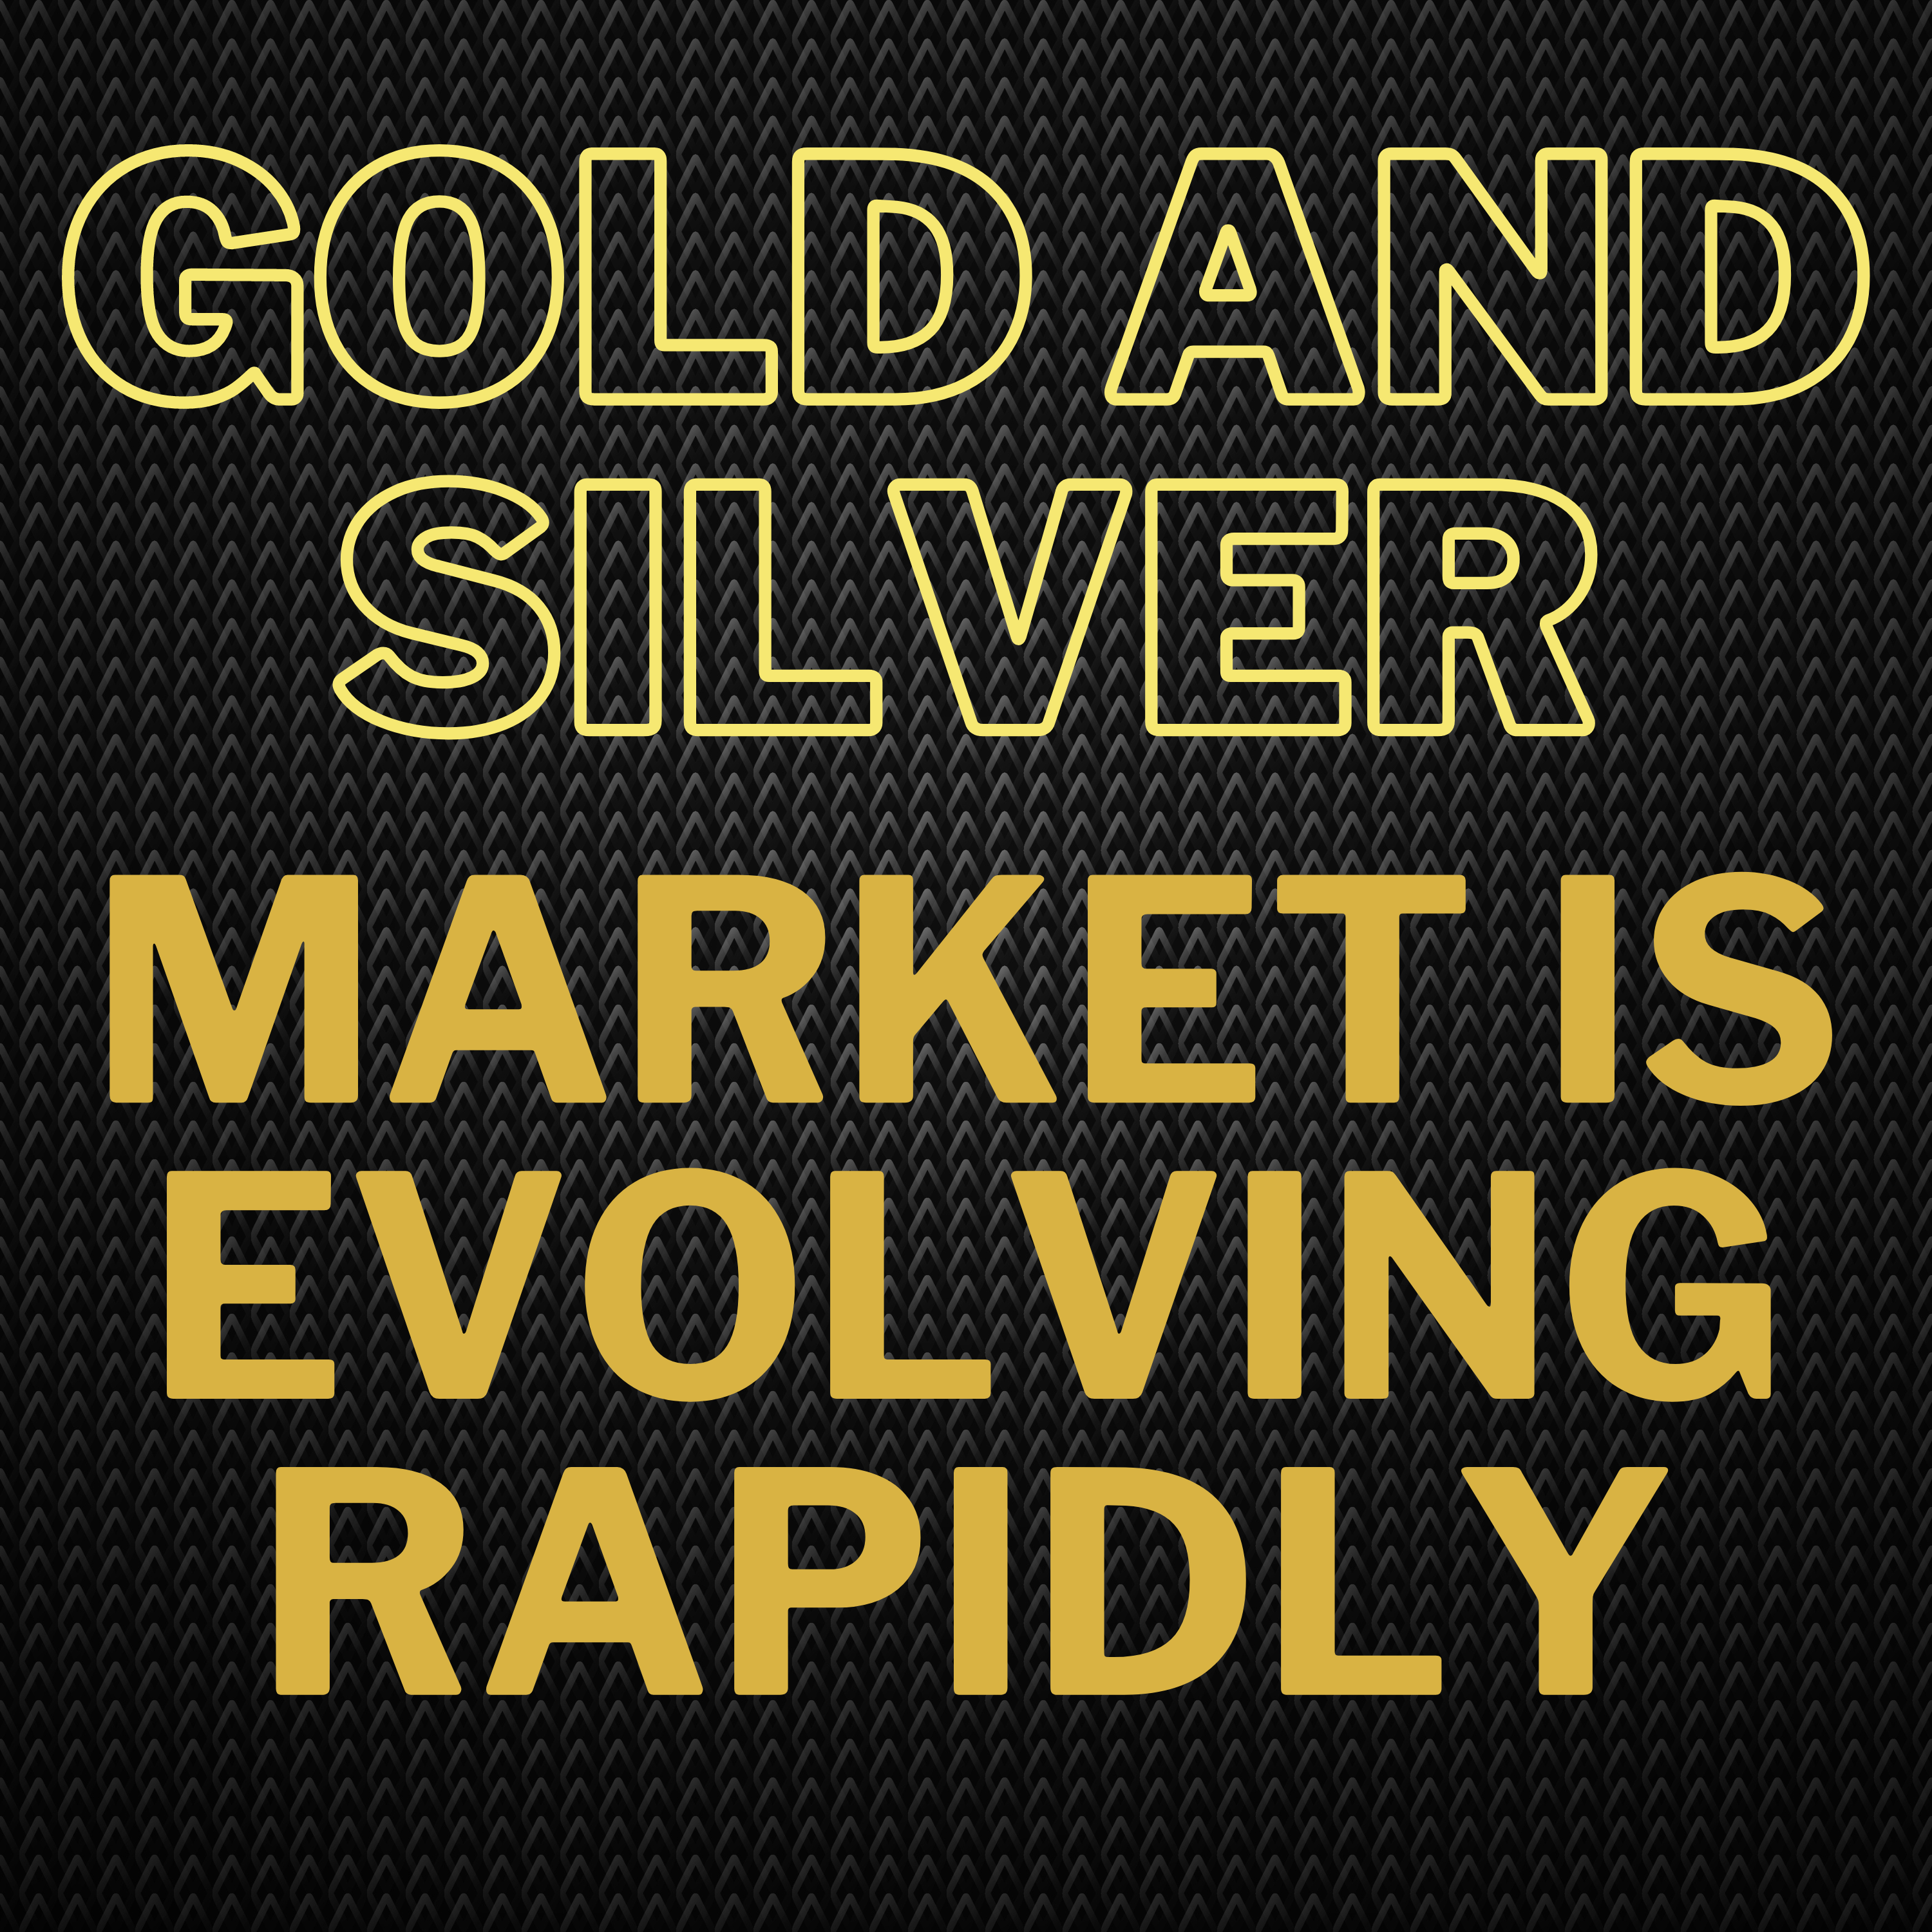 David Morgan: The Precious Metals Market is Evolving